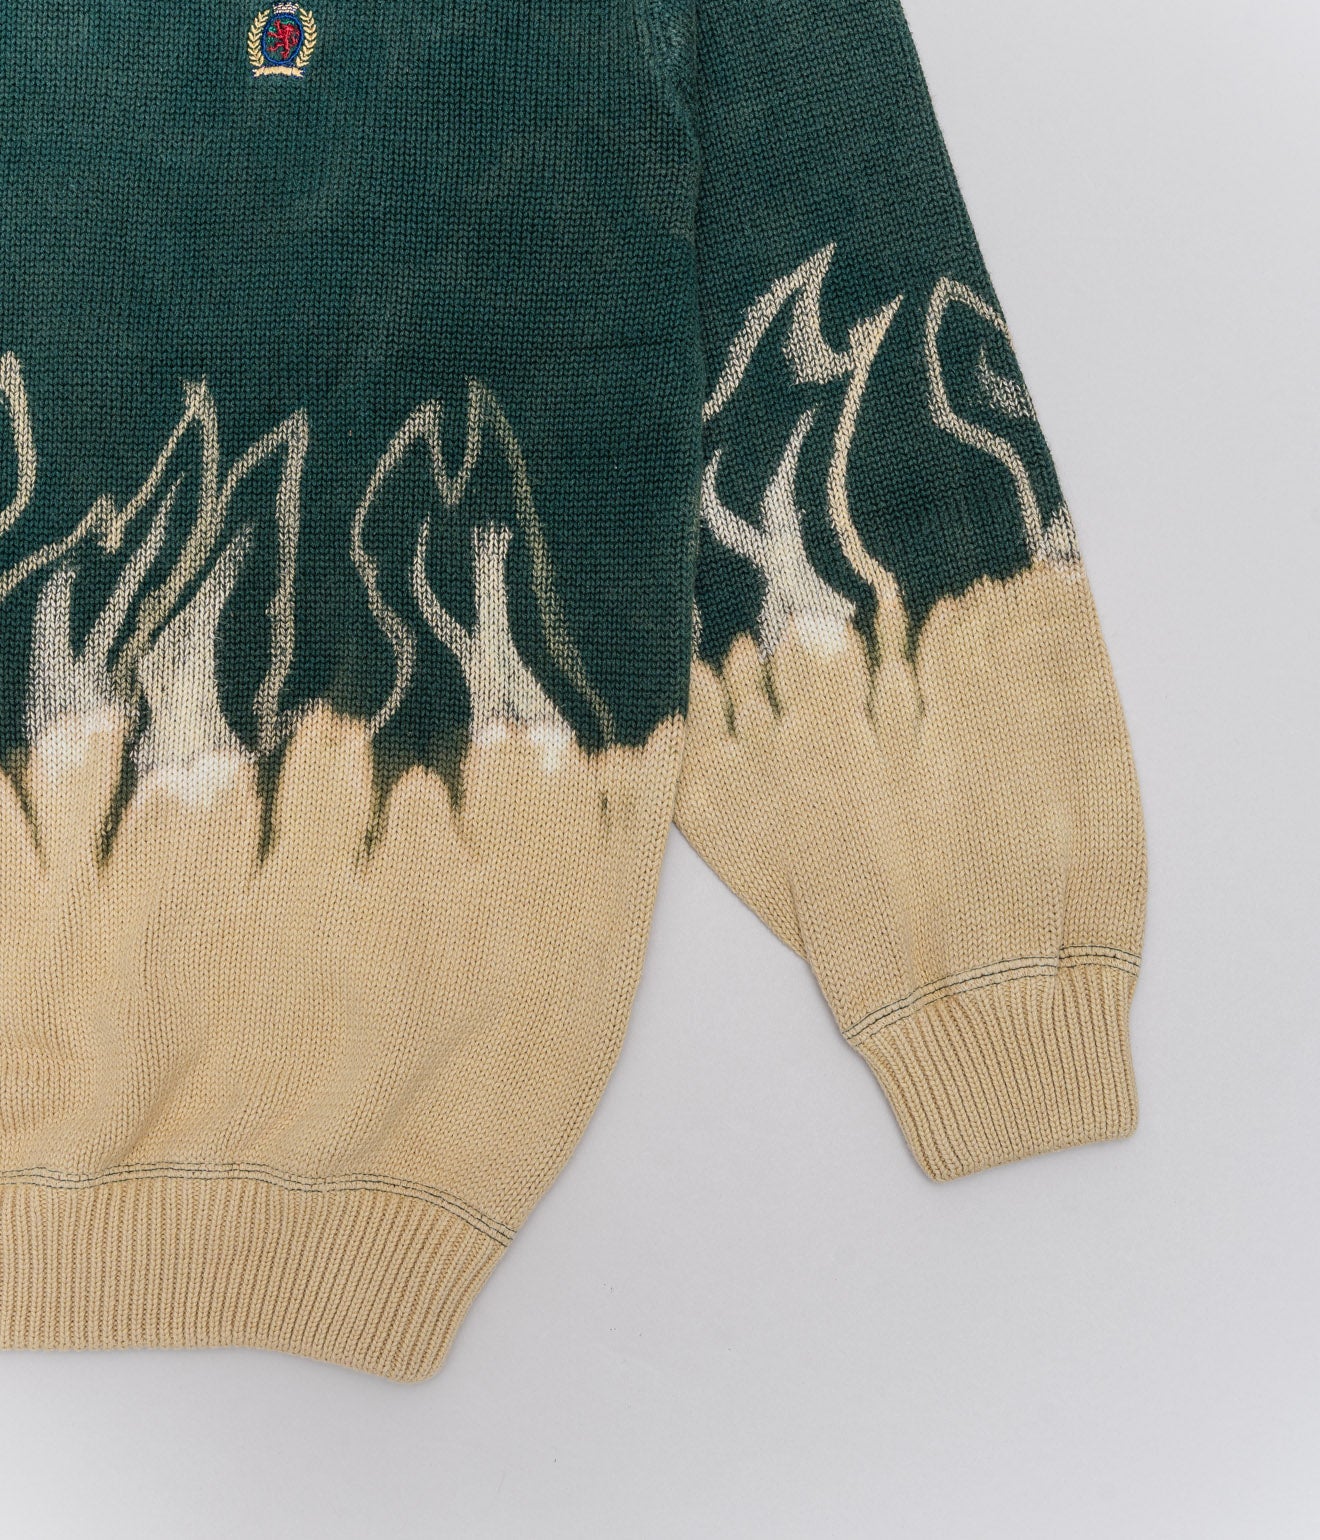 r "Tie-dye cotton sweater fire pattern" Green - WEAREALLANIMALS